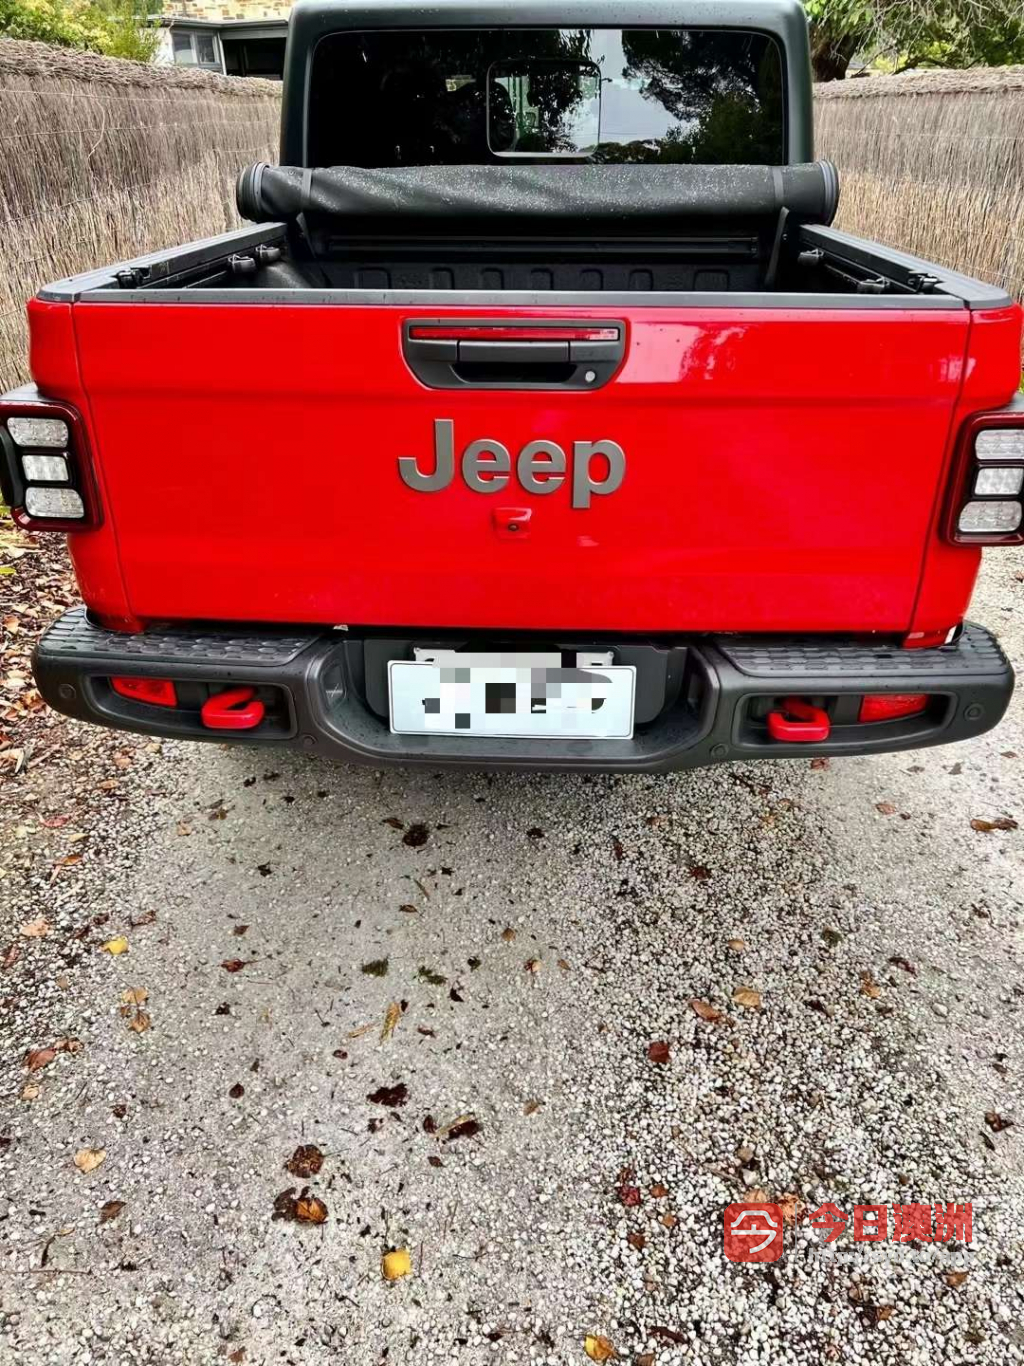 Jeep gladiator rubicon 综合排名最高的越野车 性感的红色让您心动了么